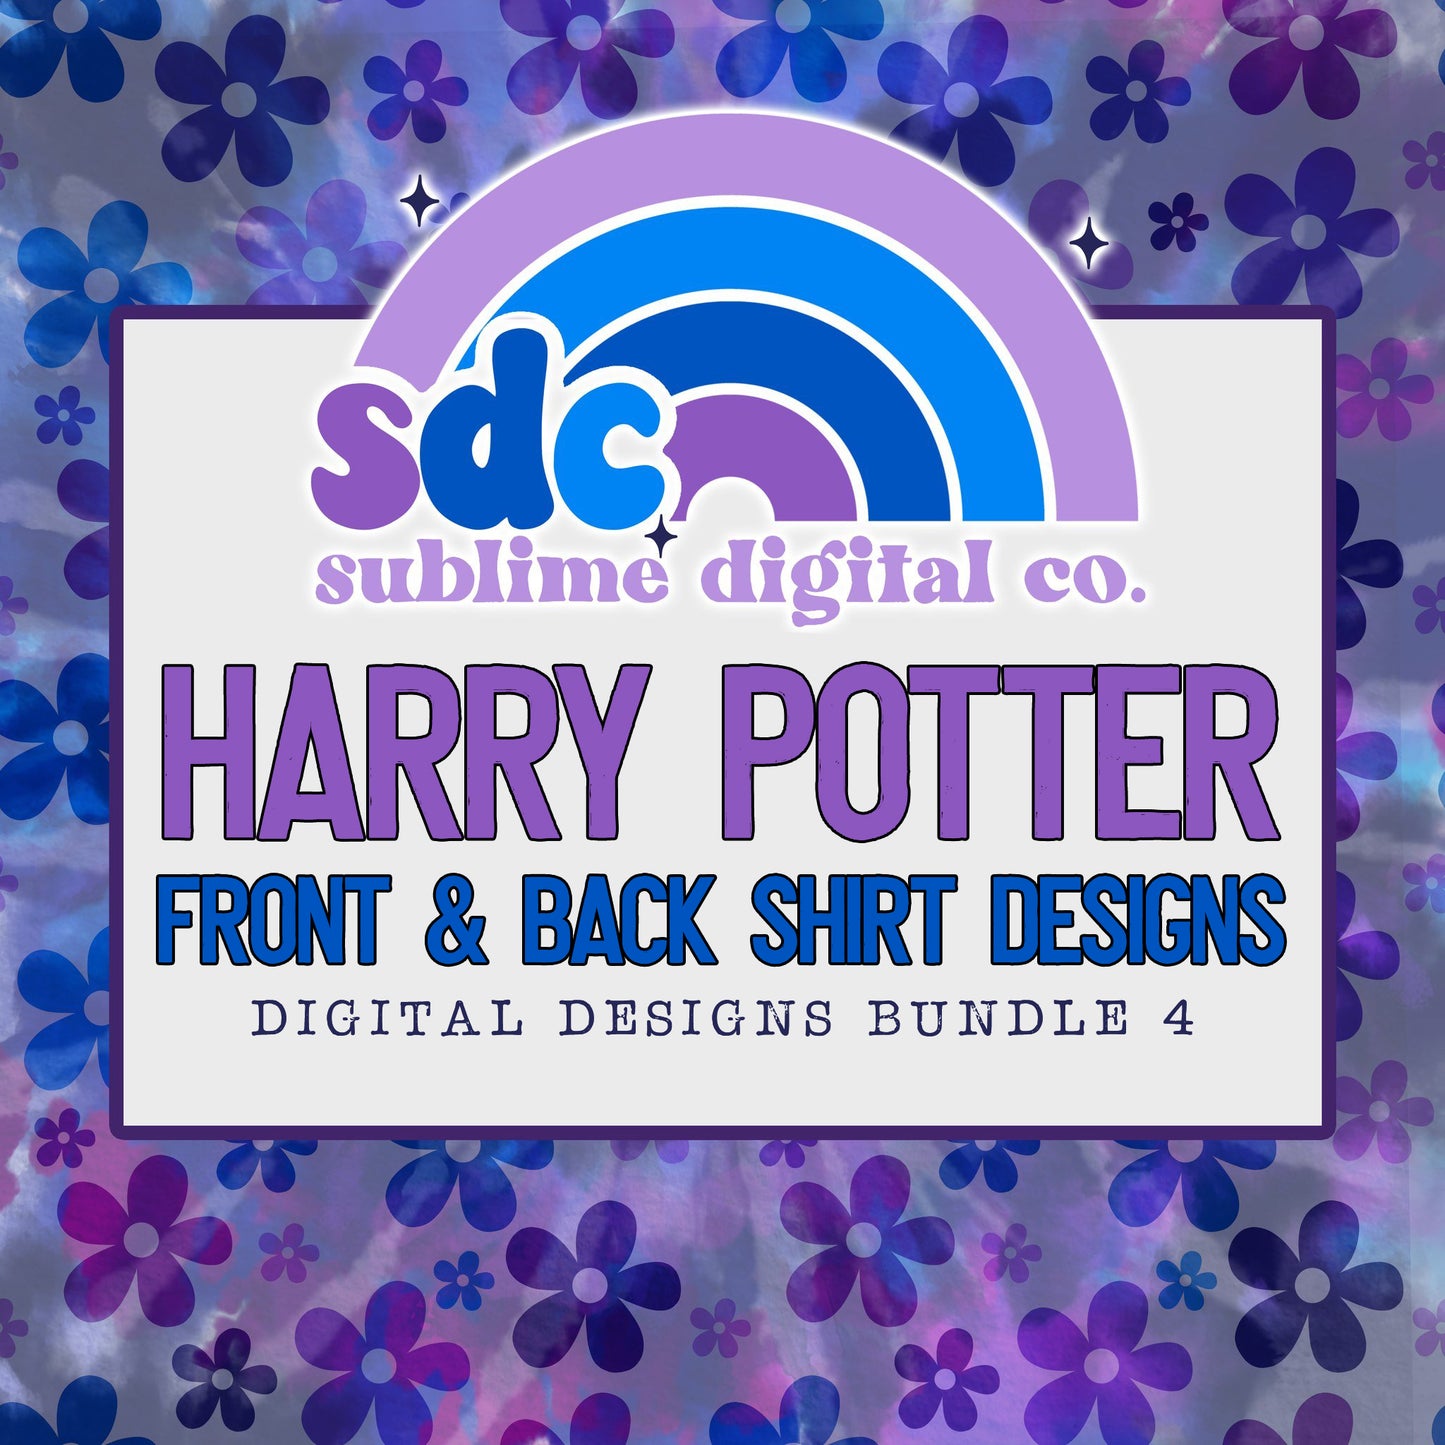 Front & Back HP Shirts 4 • Digital Design Bundles • Instant Download • Sublimation Design